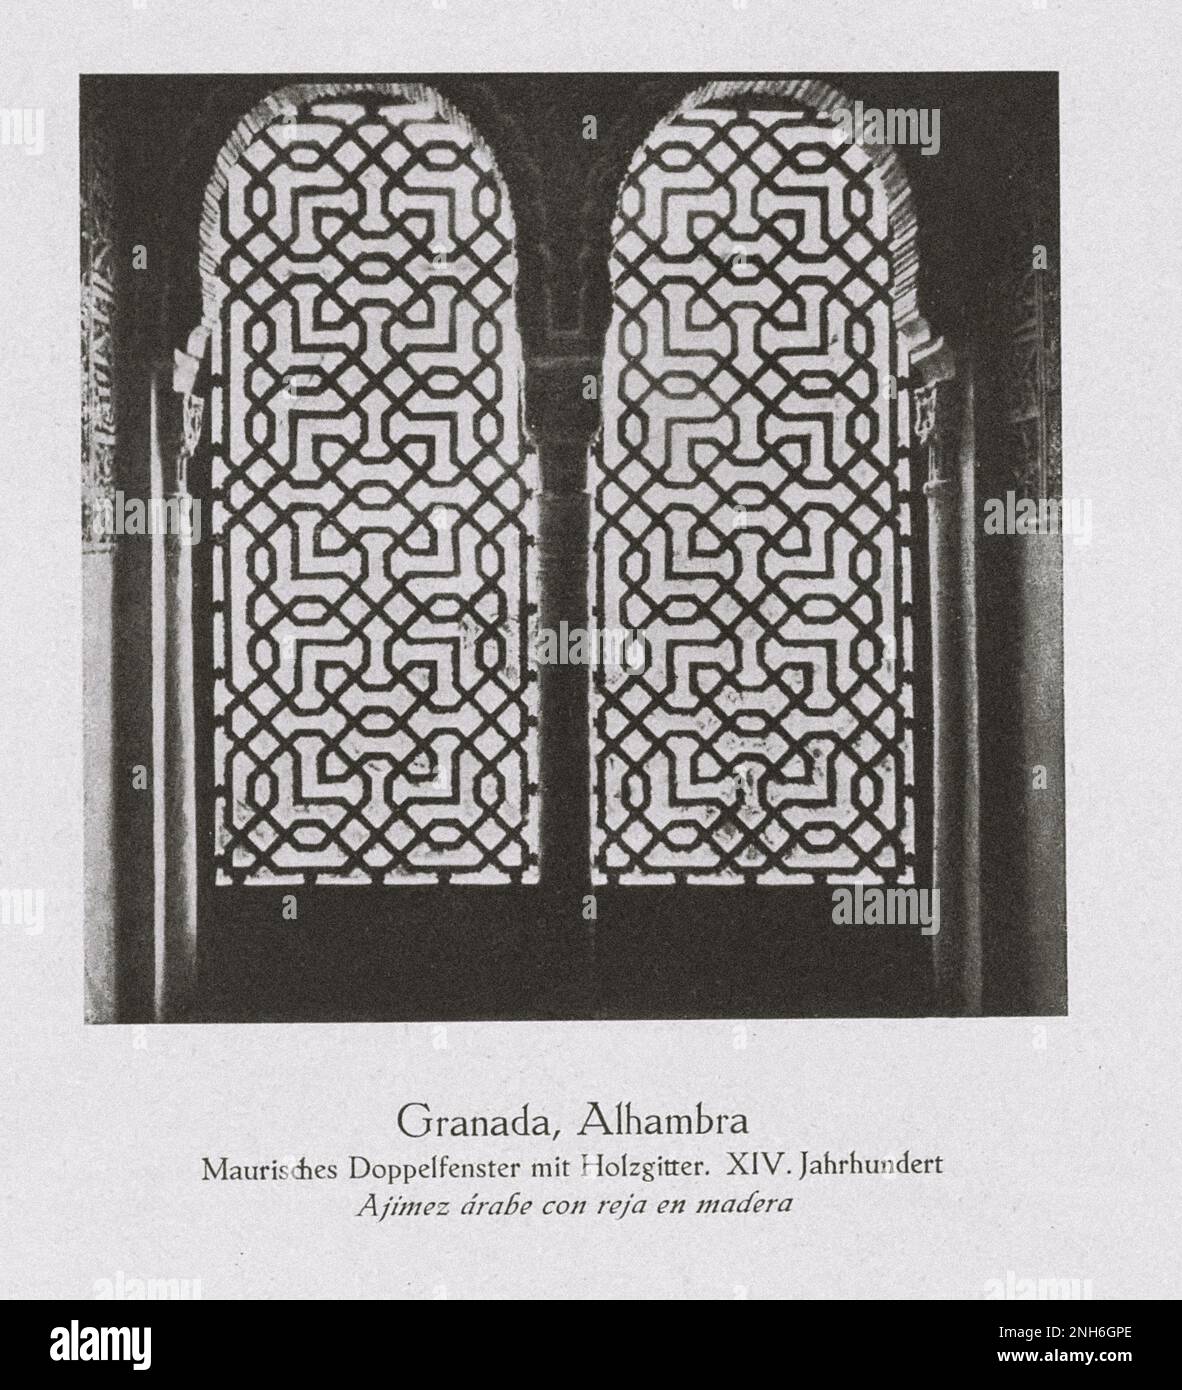 Architektur des alten Spaniens. Oldtimer-Foto von Alhambra, Granada. Maurisches Doppelfenster mit dekorativem Holzgitter. XIV. Jahrhundert Stockfoto